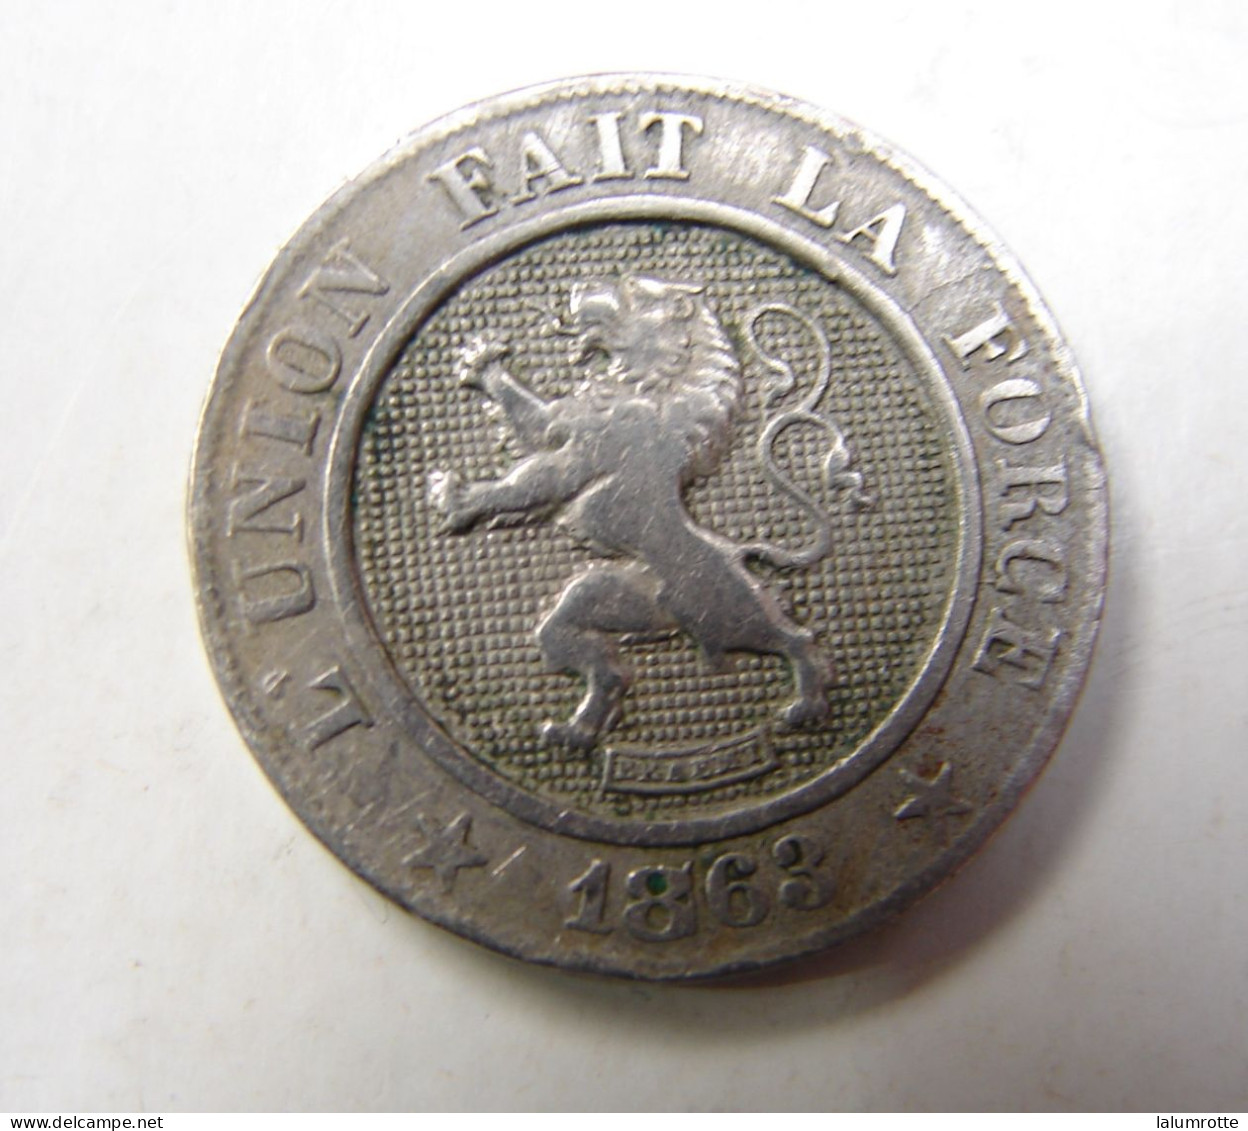 Monnaie.6. Dix Centimes 1863. Fr - 10 Centimes